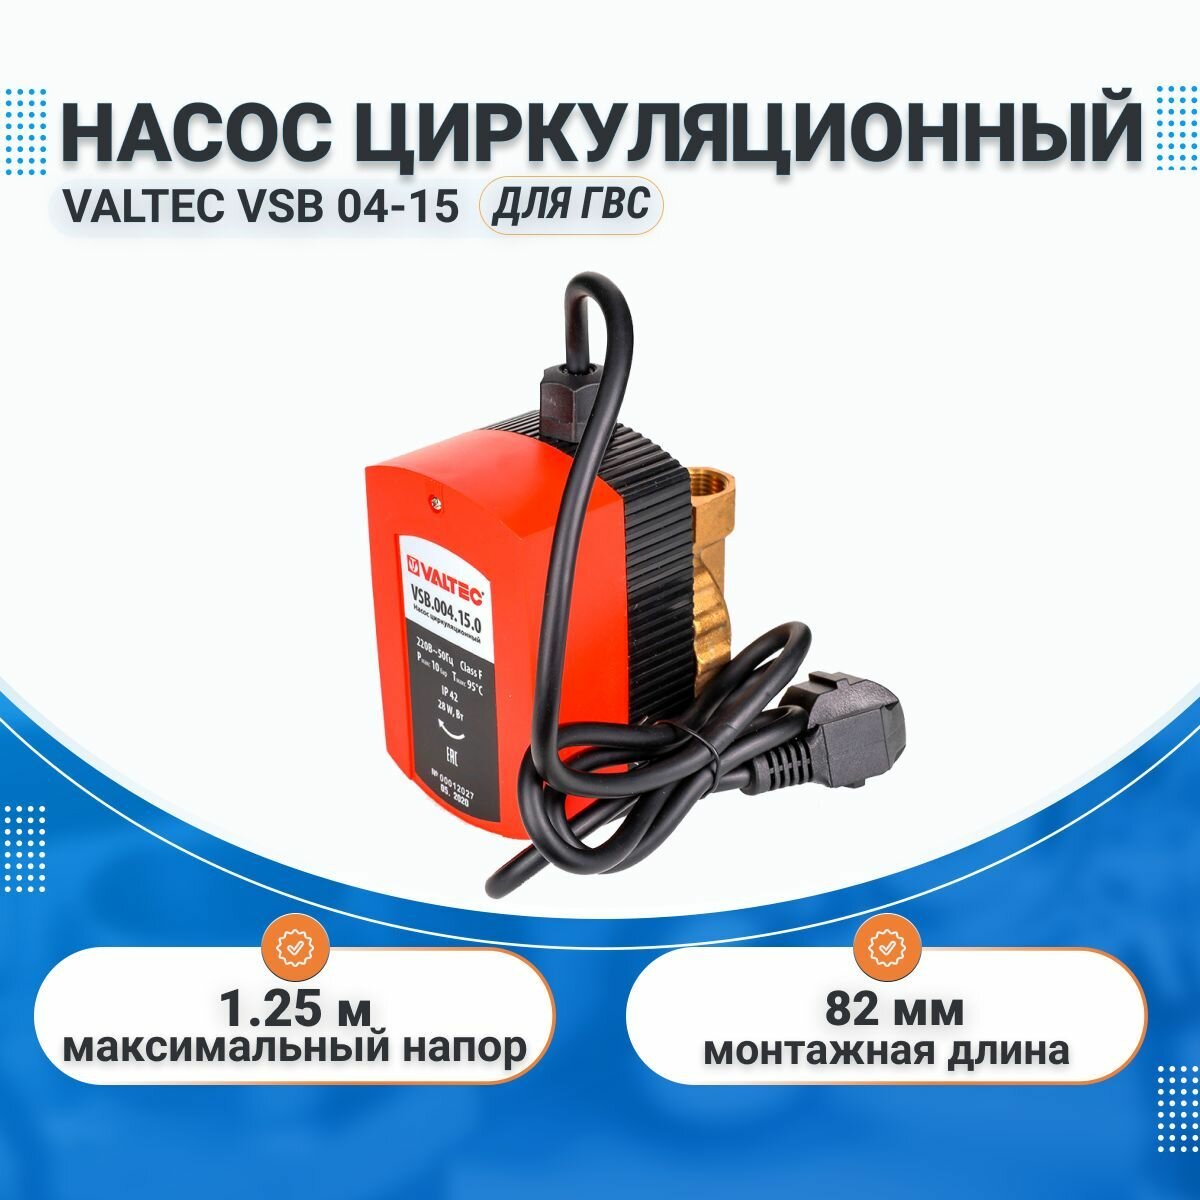 Насос циркуляционный для ГВС VALTEC VSB 04-15